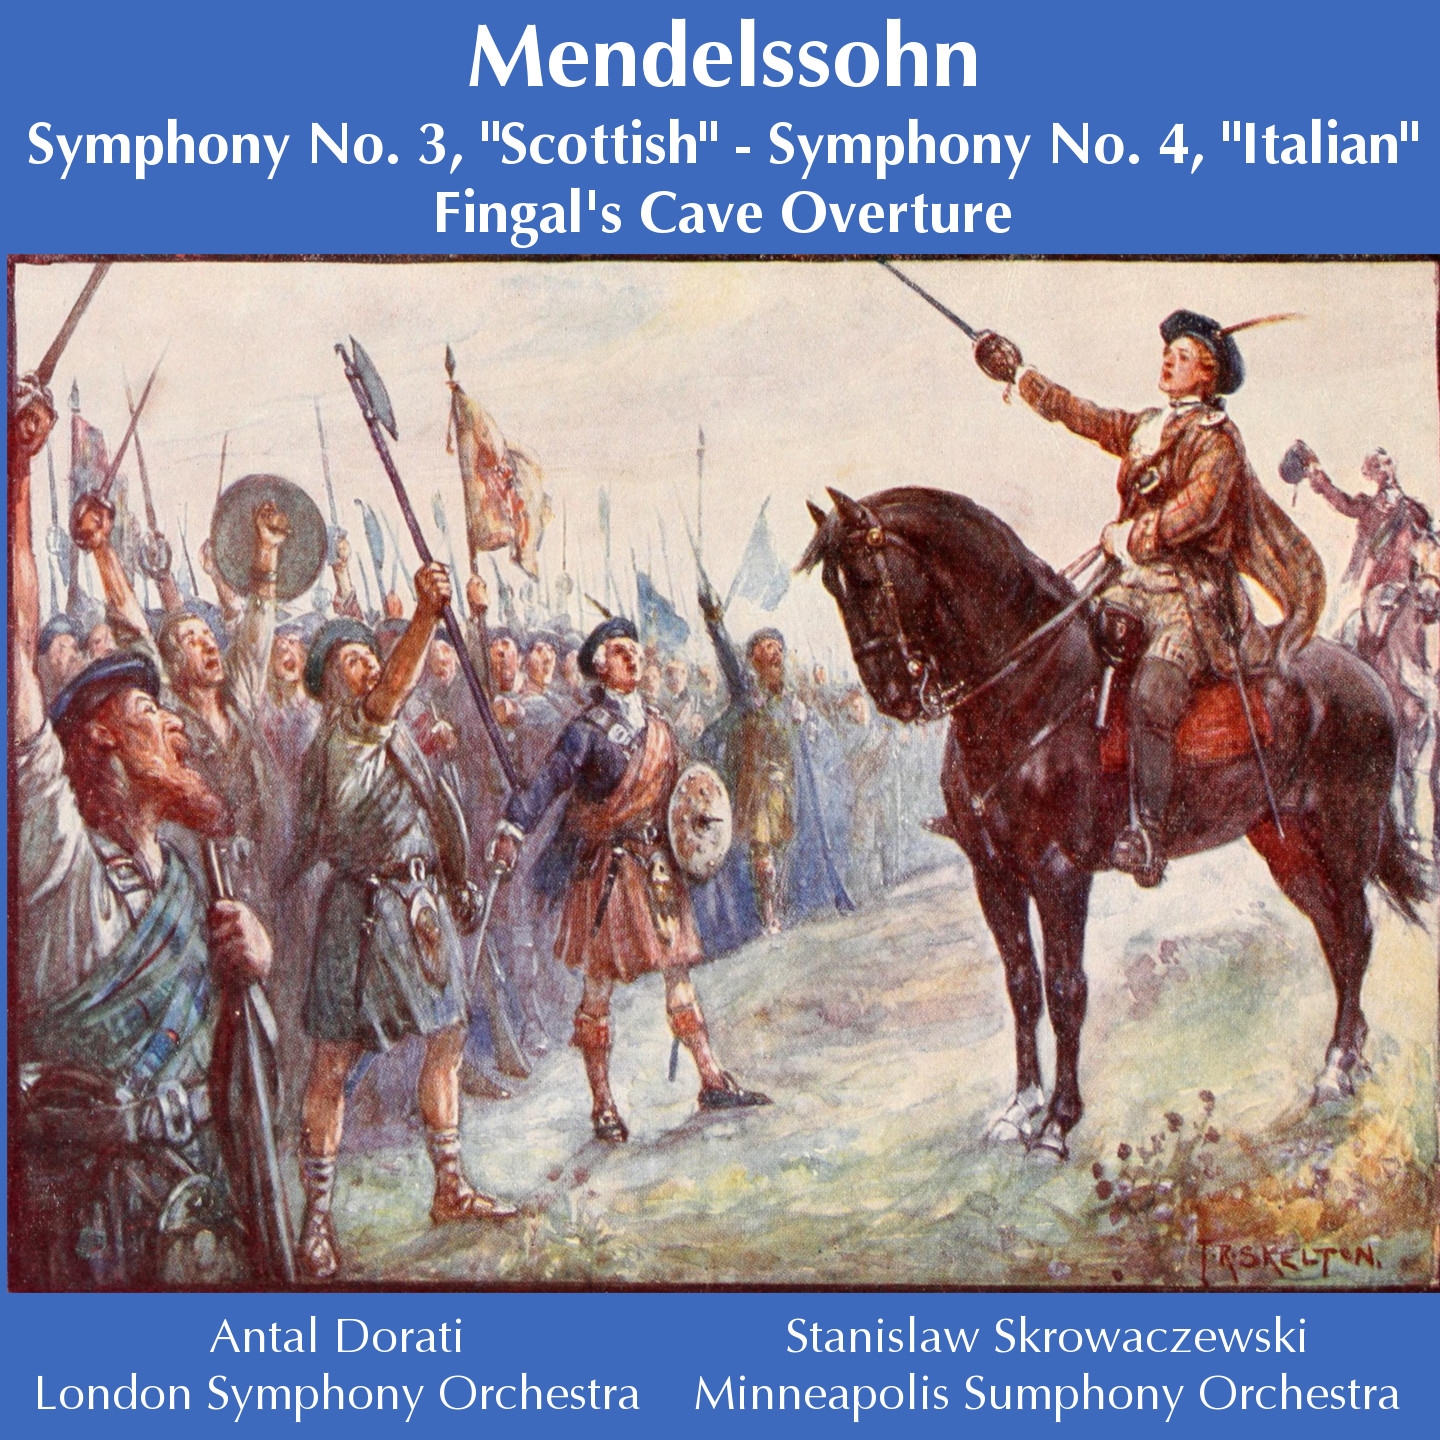 Symphony No. 3 in A Minor, Op. 56 "Scottish": IV. Allegro vivacissimo - Allegro maestoso assai